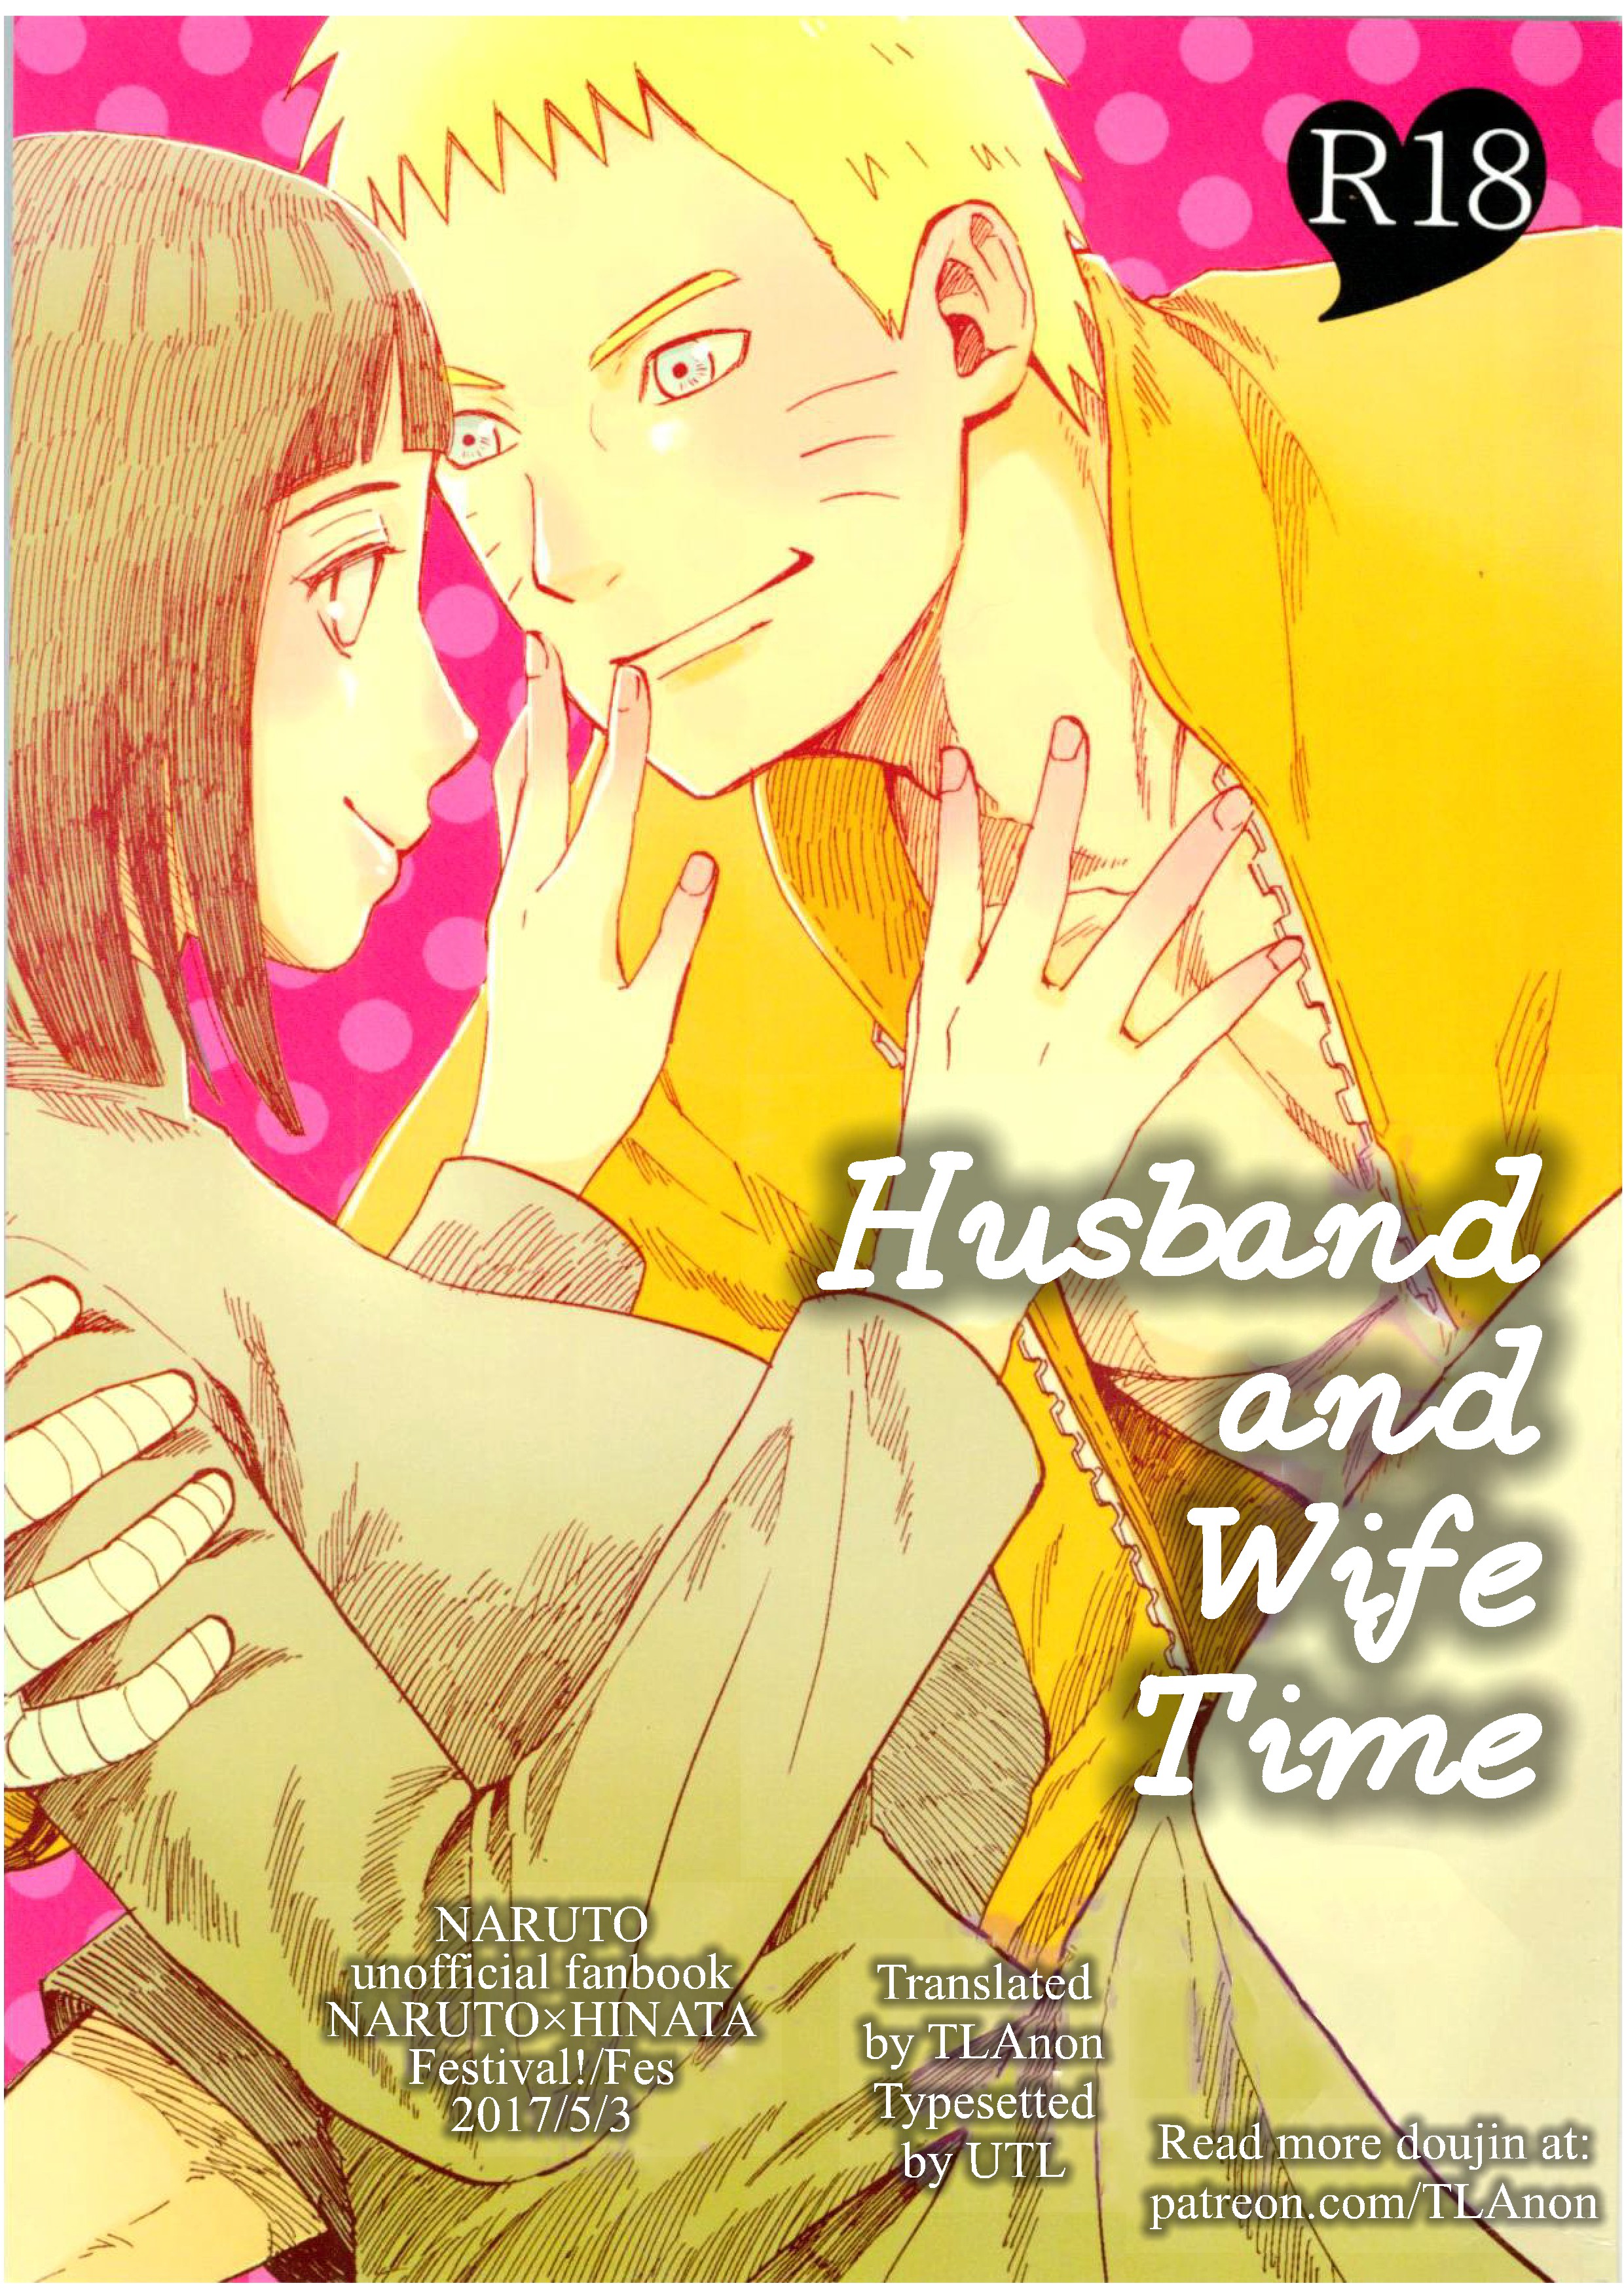 Fes - Husband and Wife Time (Naruto) Hentai Comic